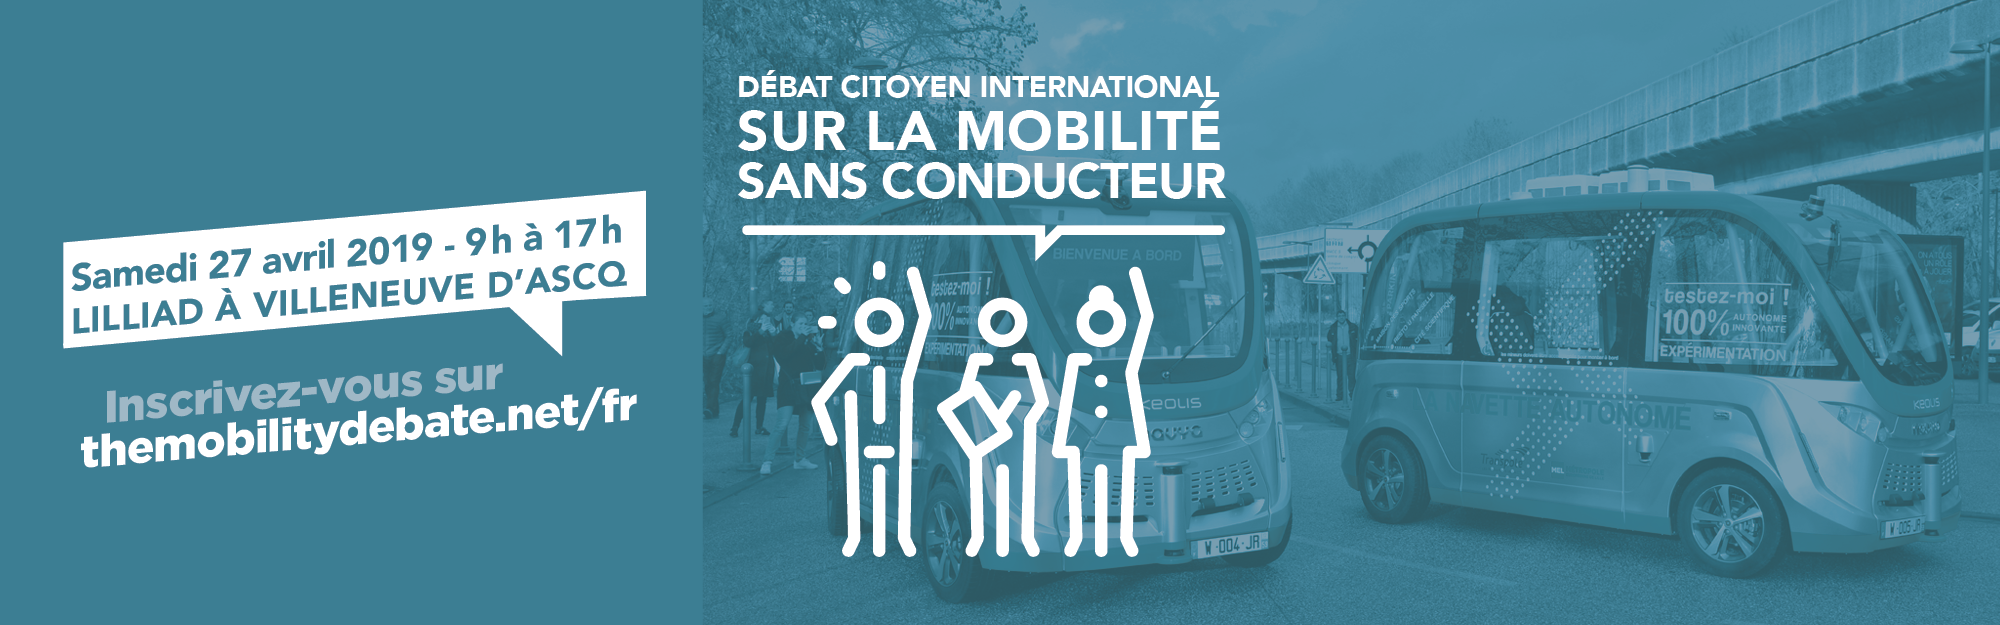 Mobilité sans conducteur : Un débat citoyen à Lilliad le 27 avril